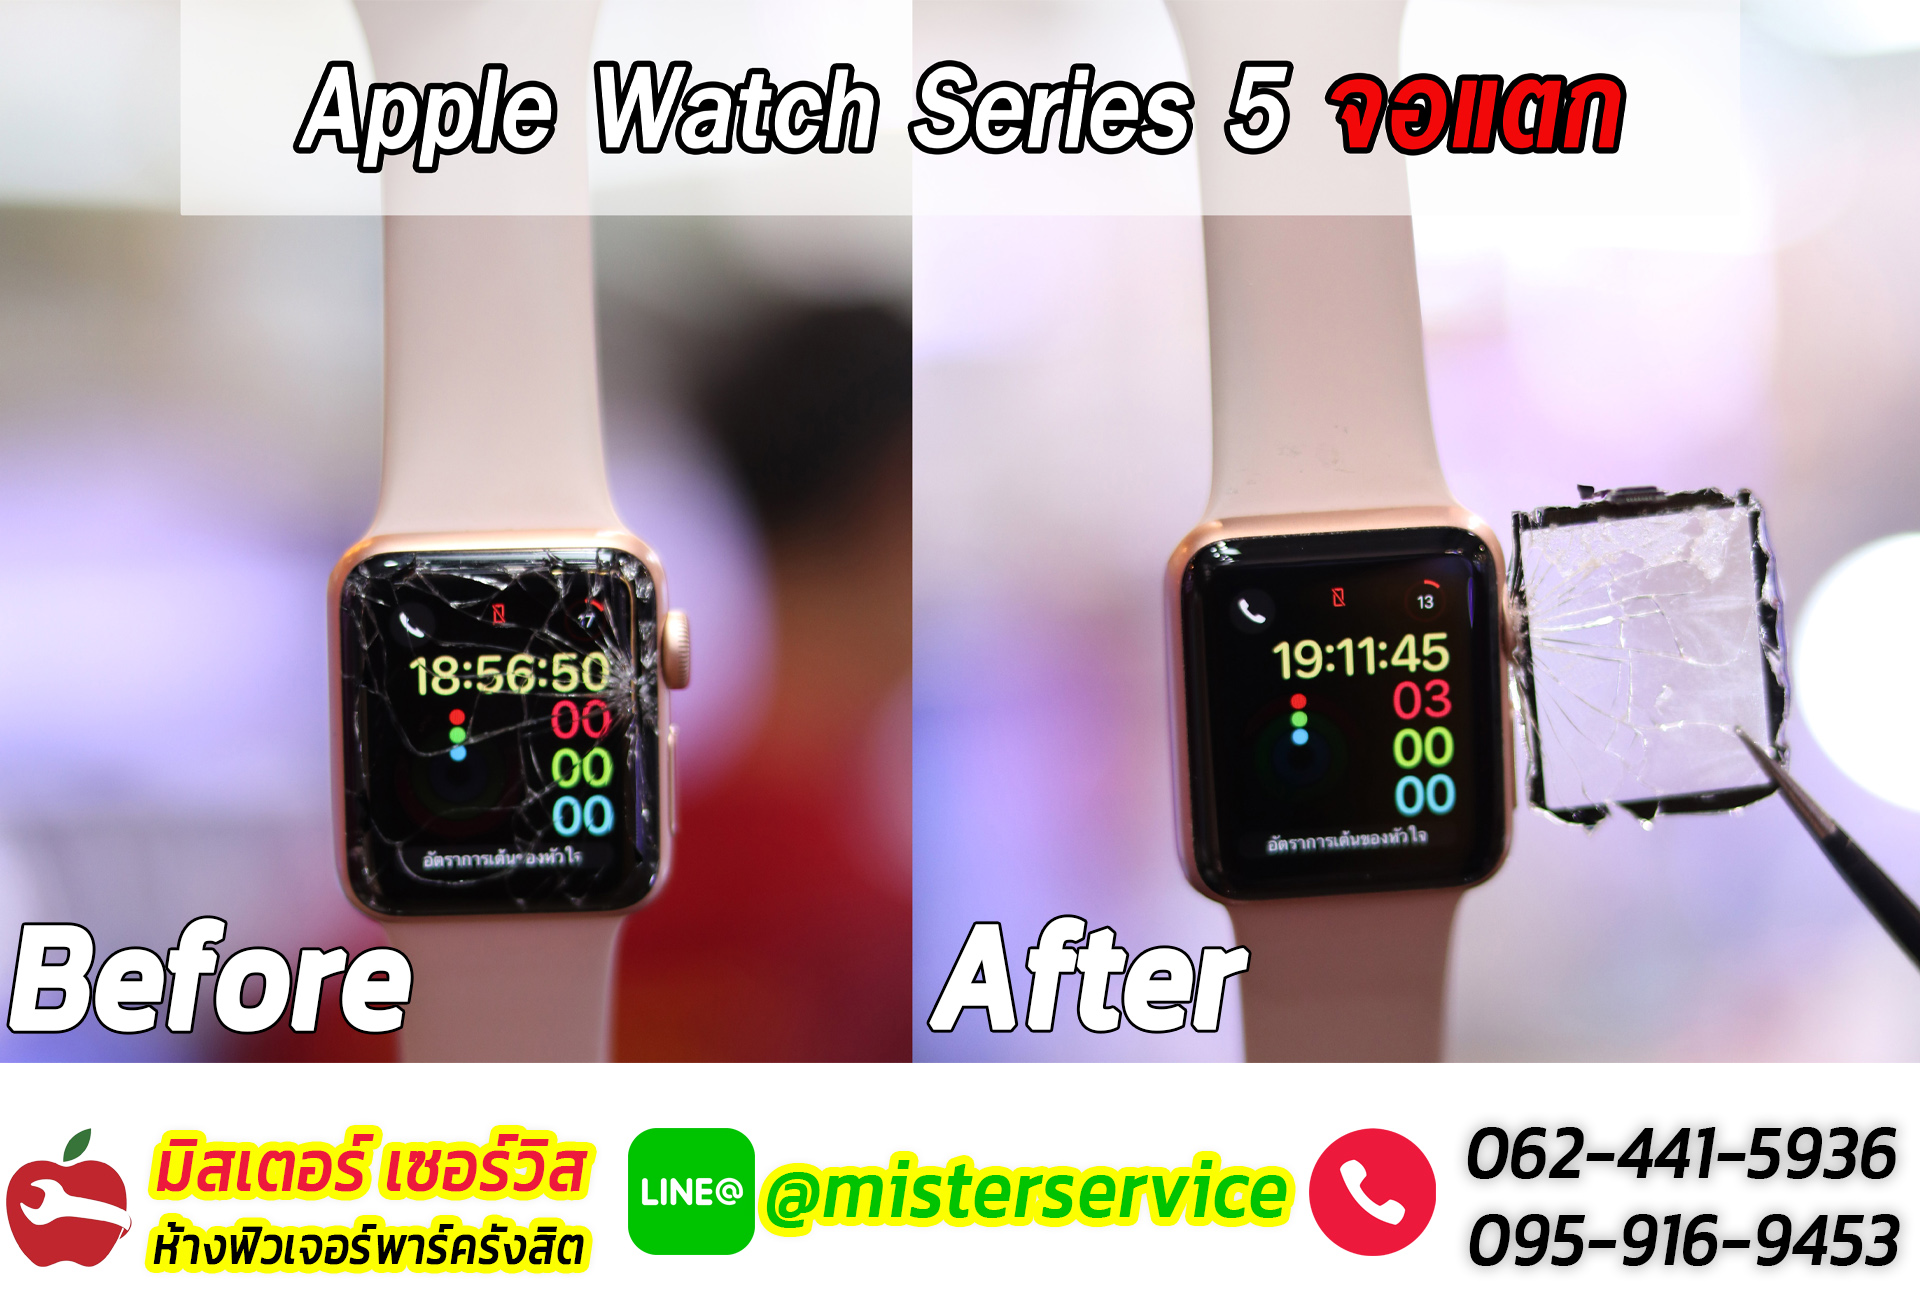 ซ่อม apple watch ปากเกร็ด